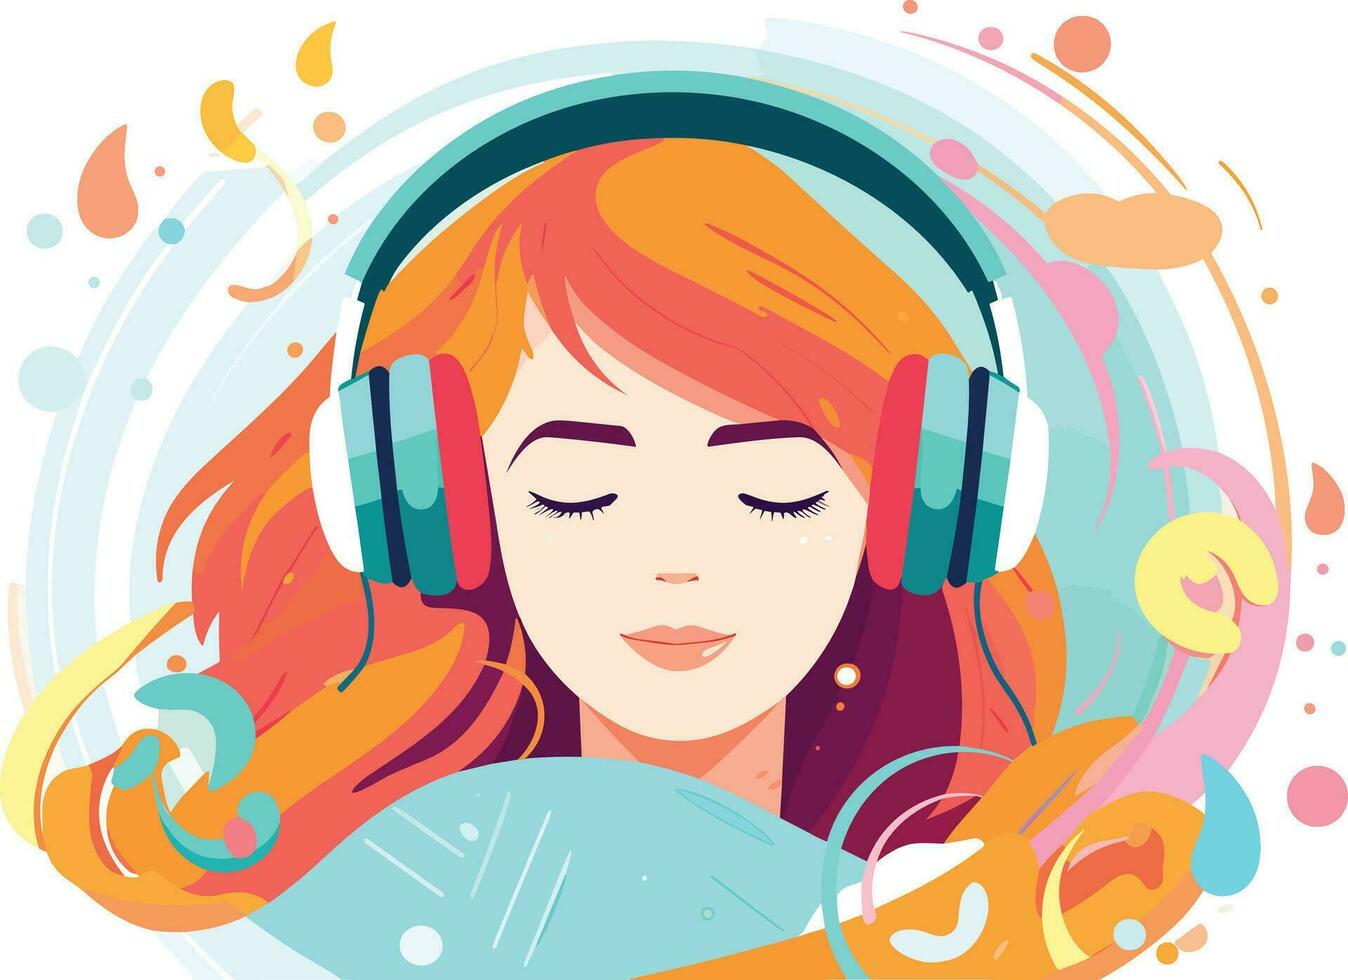 söt flicka lyssnande till musik lugnt illustration, glad flicka lyssnande till musik vektor